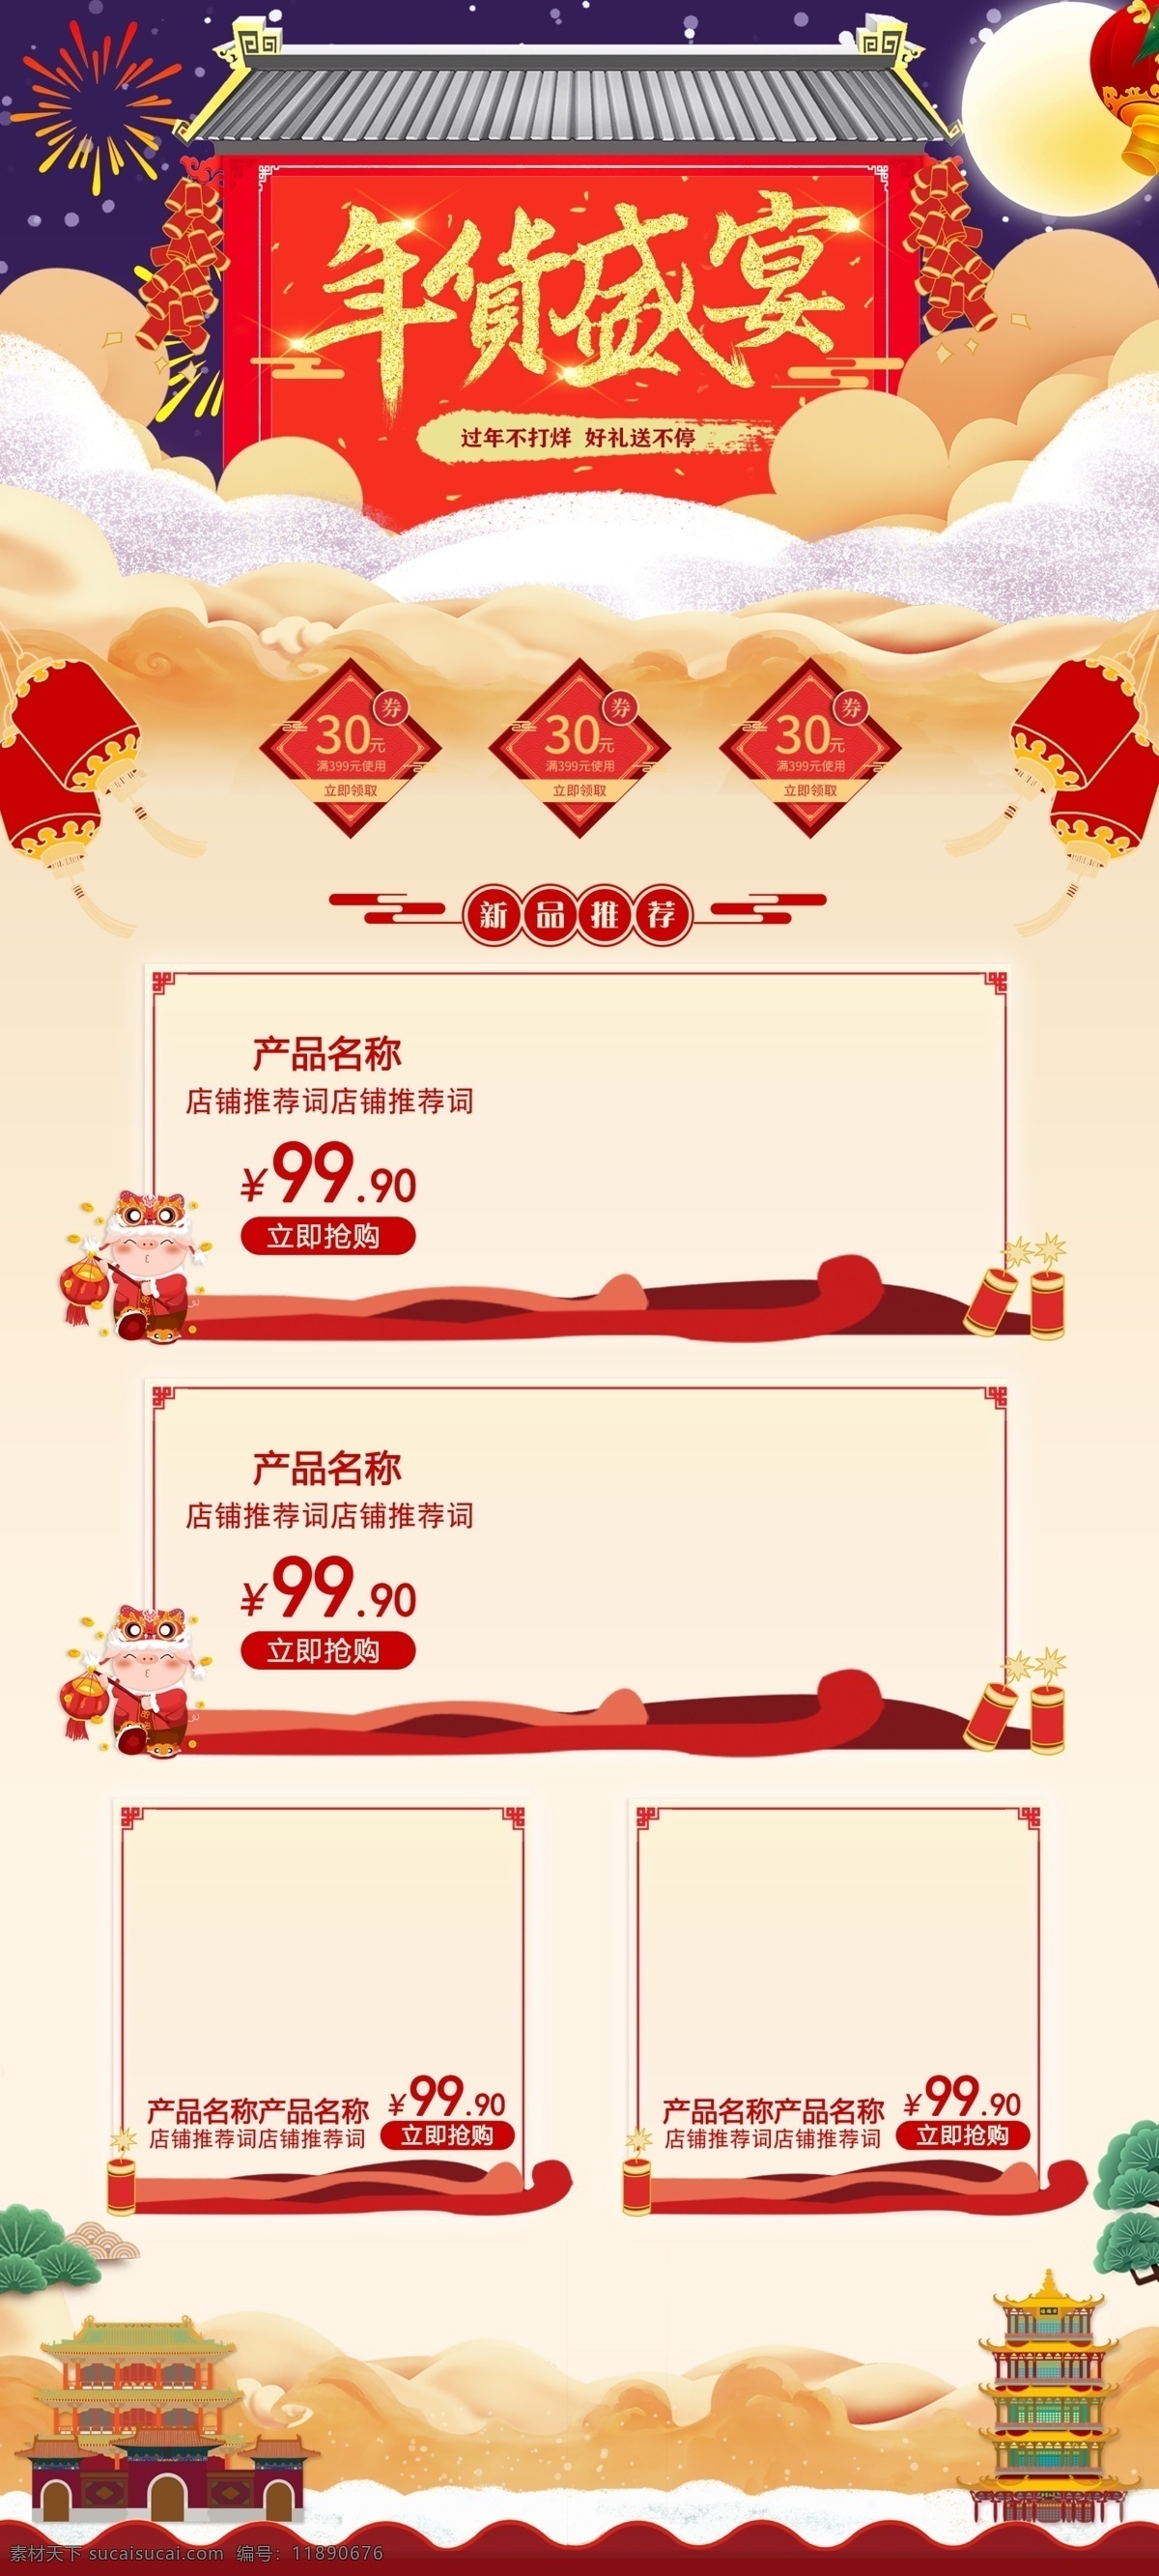 天猫 首页 促销 模板 年货 节 红色 中 国风 新年 喜庆 首页模板 淘宝 年货节 中国风